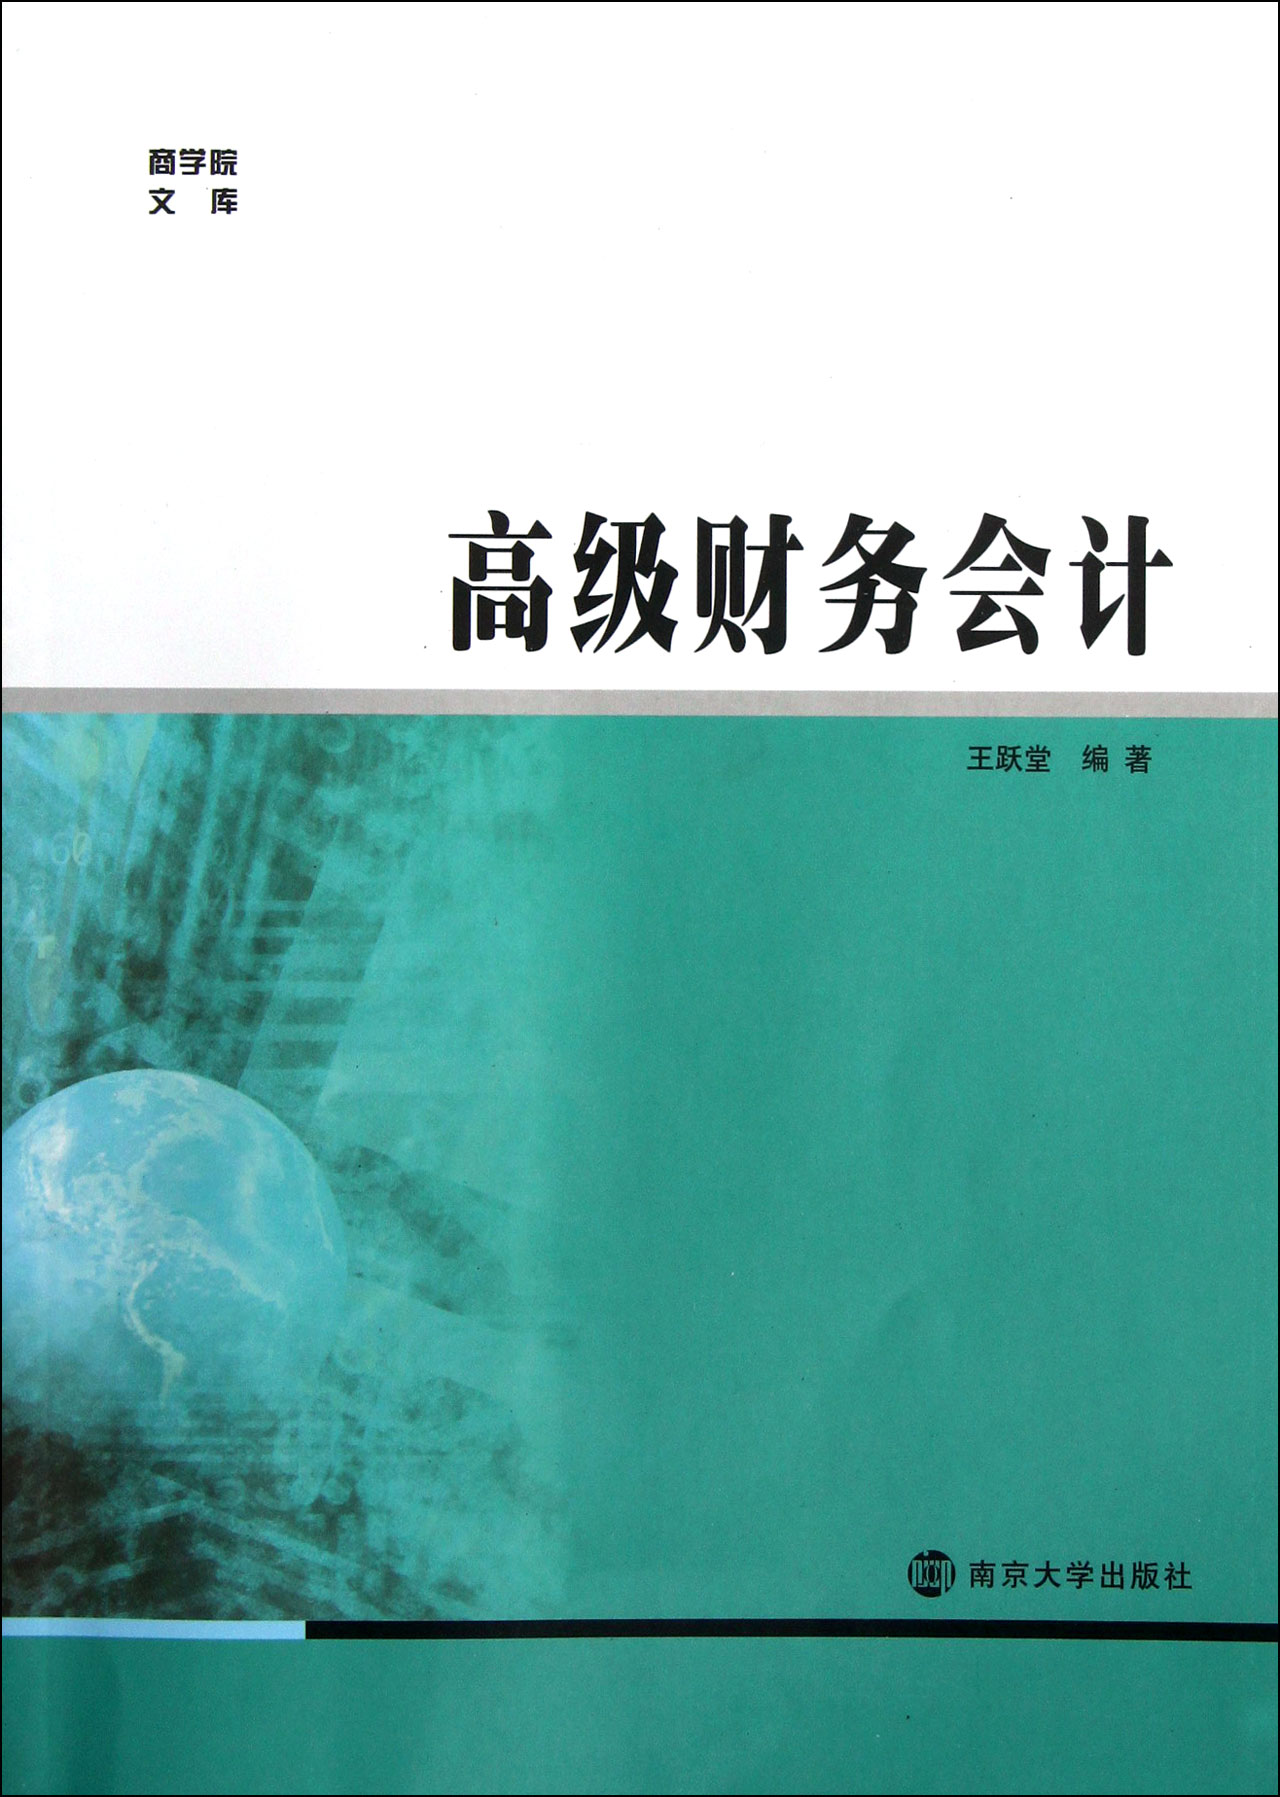 財務會計(2015年上海財經大學出版社出版書籍)